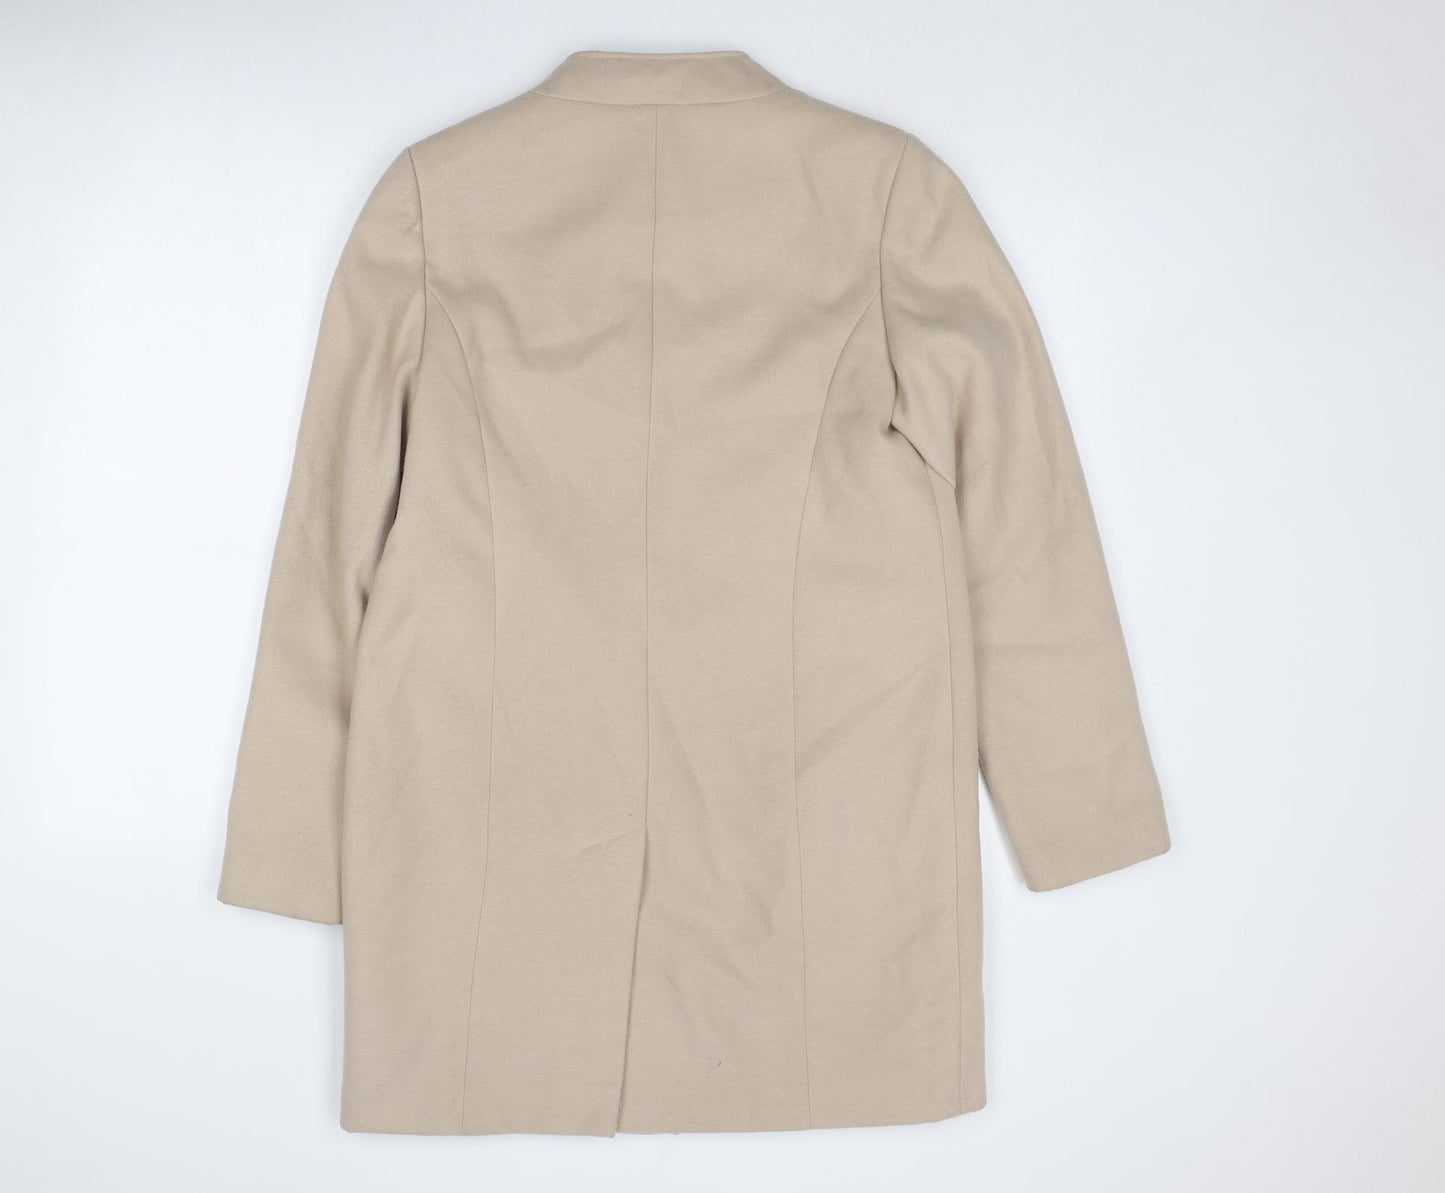 Marks and Spencer Womens Beige Overcoat Coat Size 12 Zip